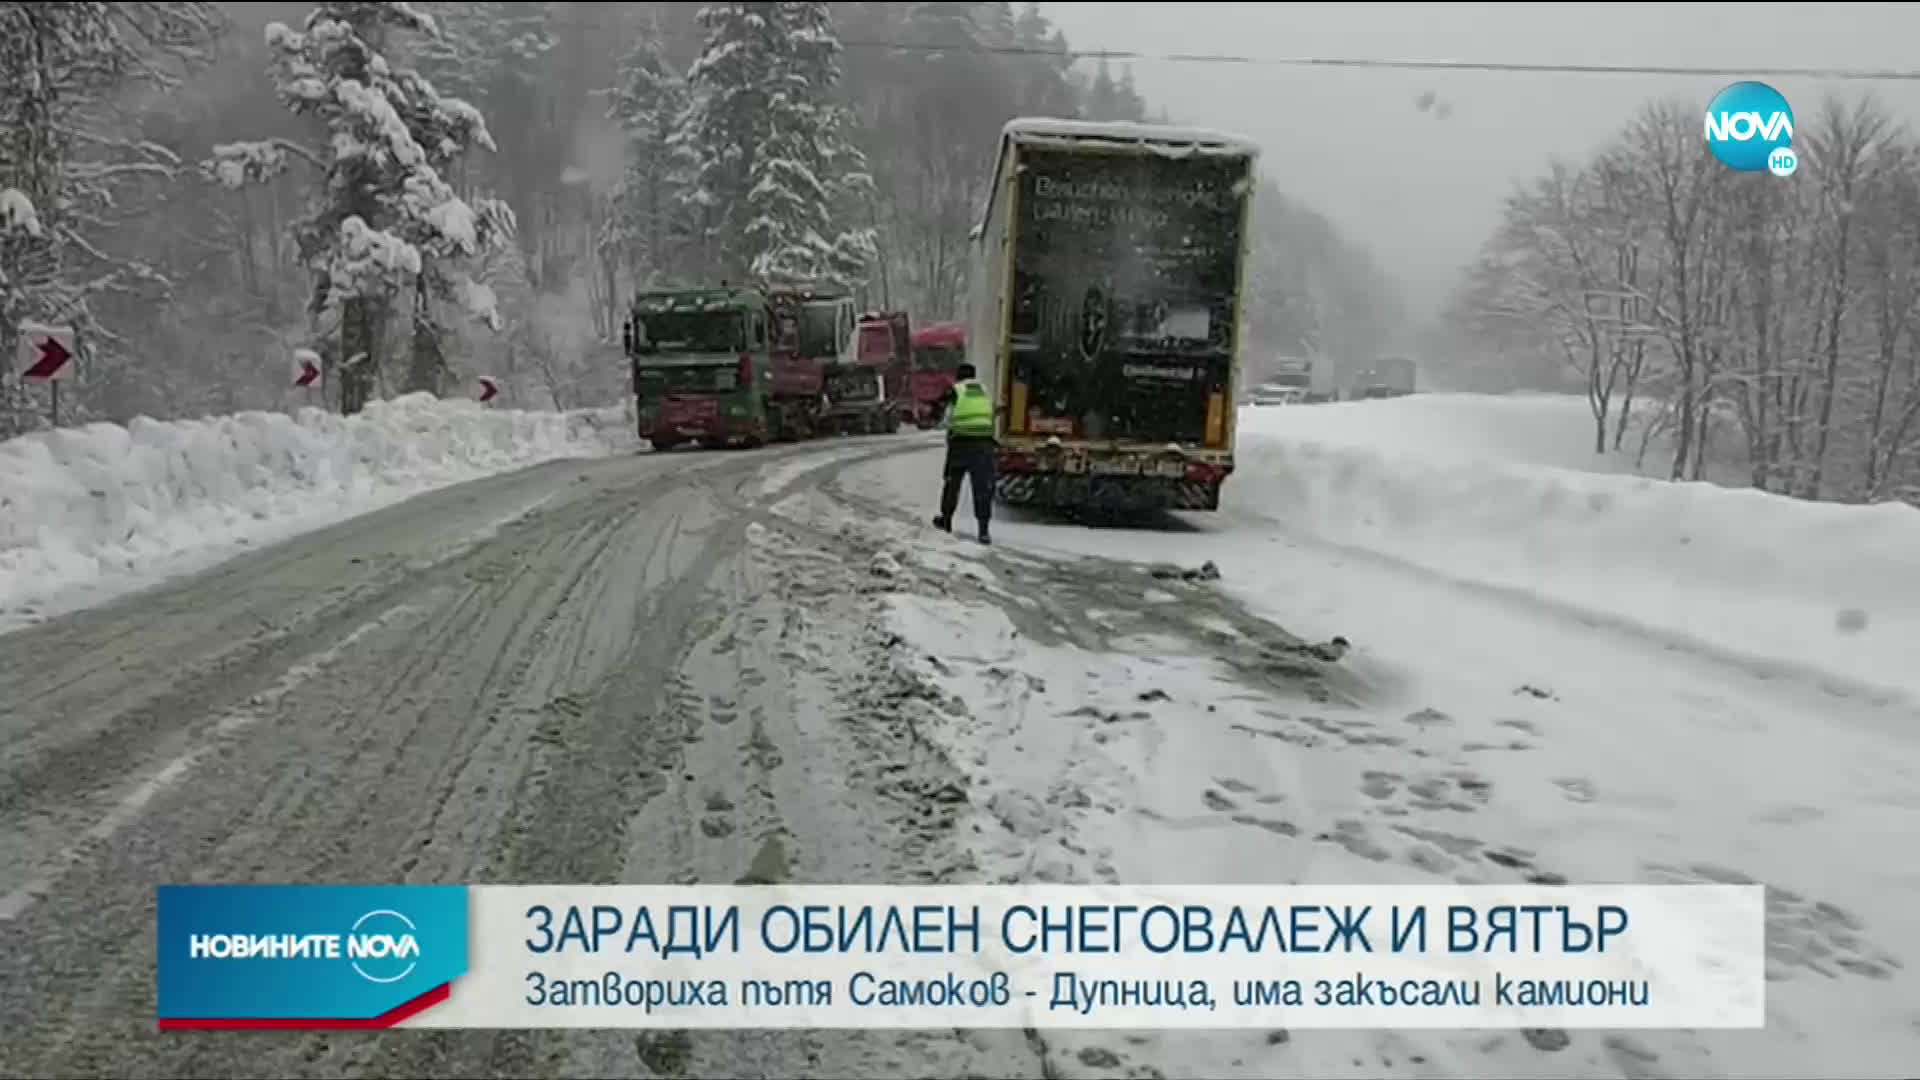 Камион блокира движението на пътя Самоков - Клисура (ВИДЕО)